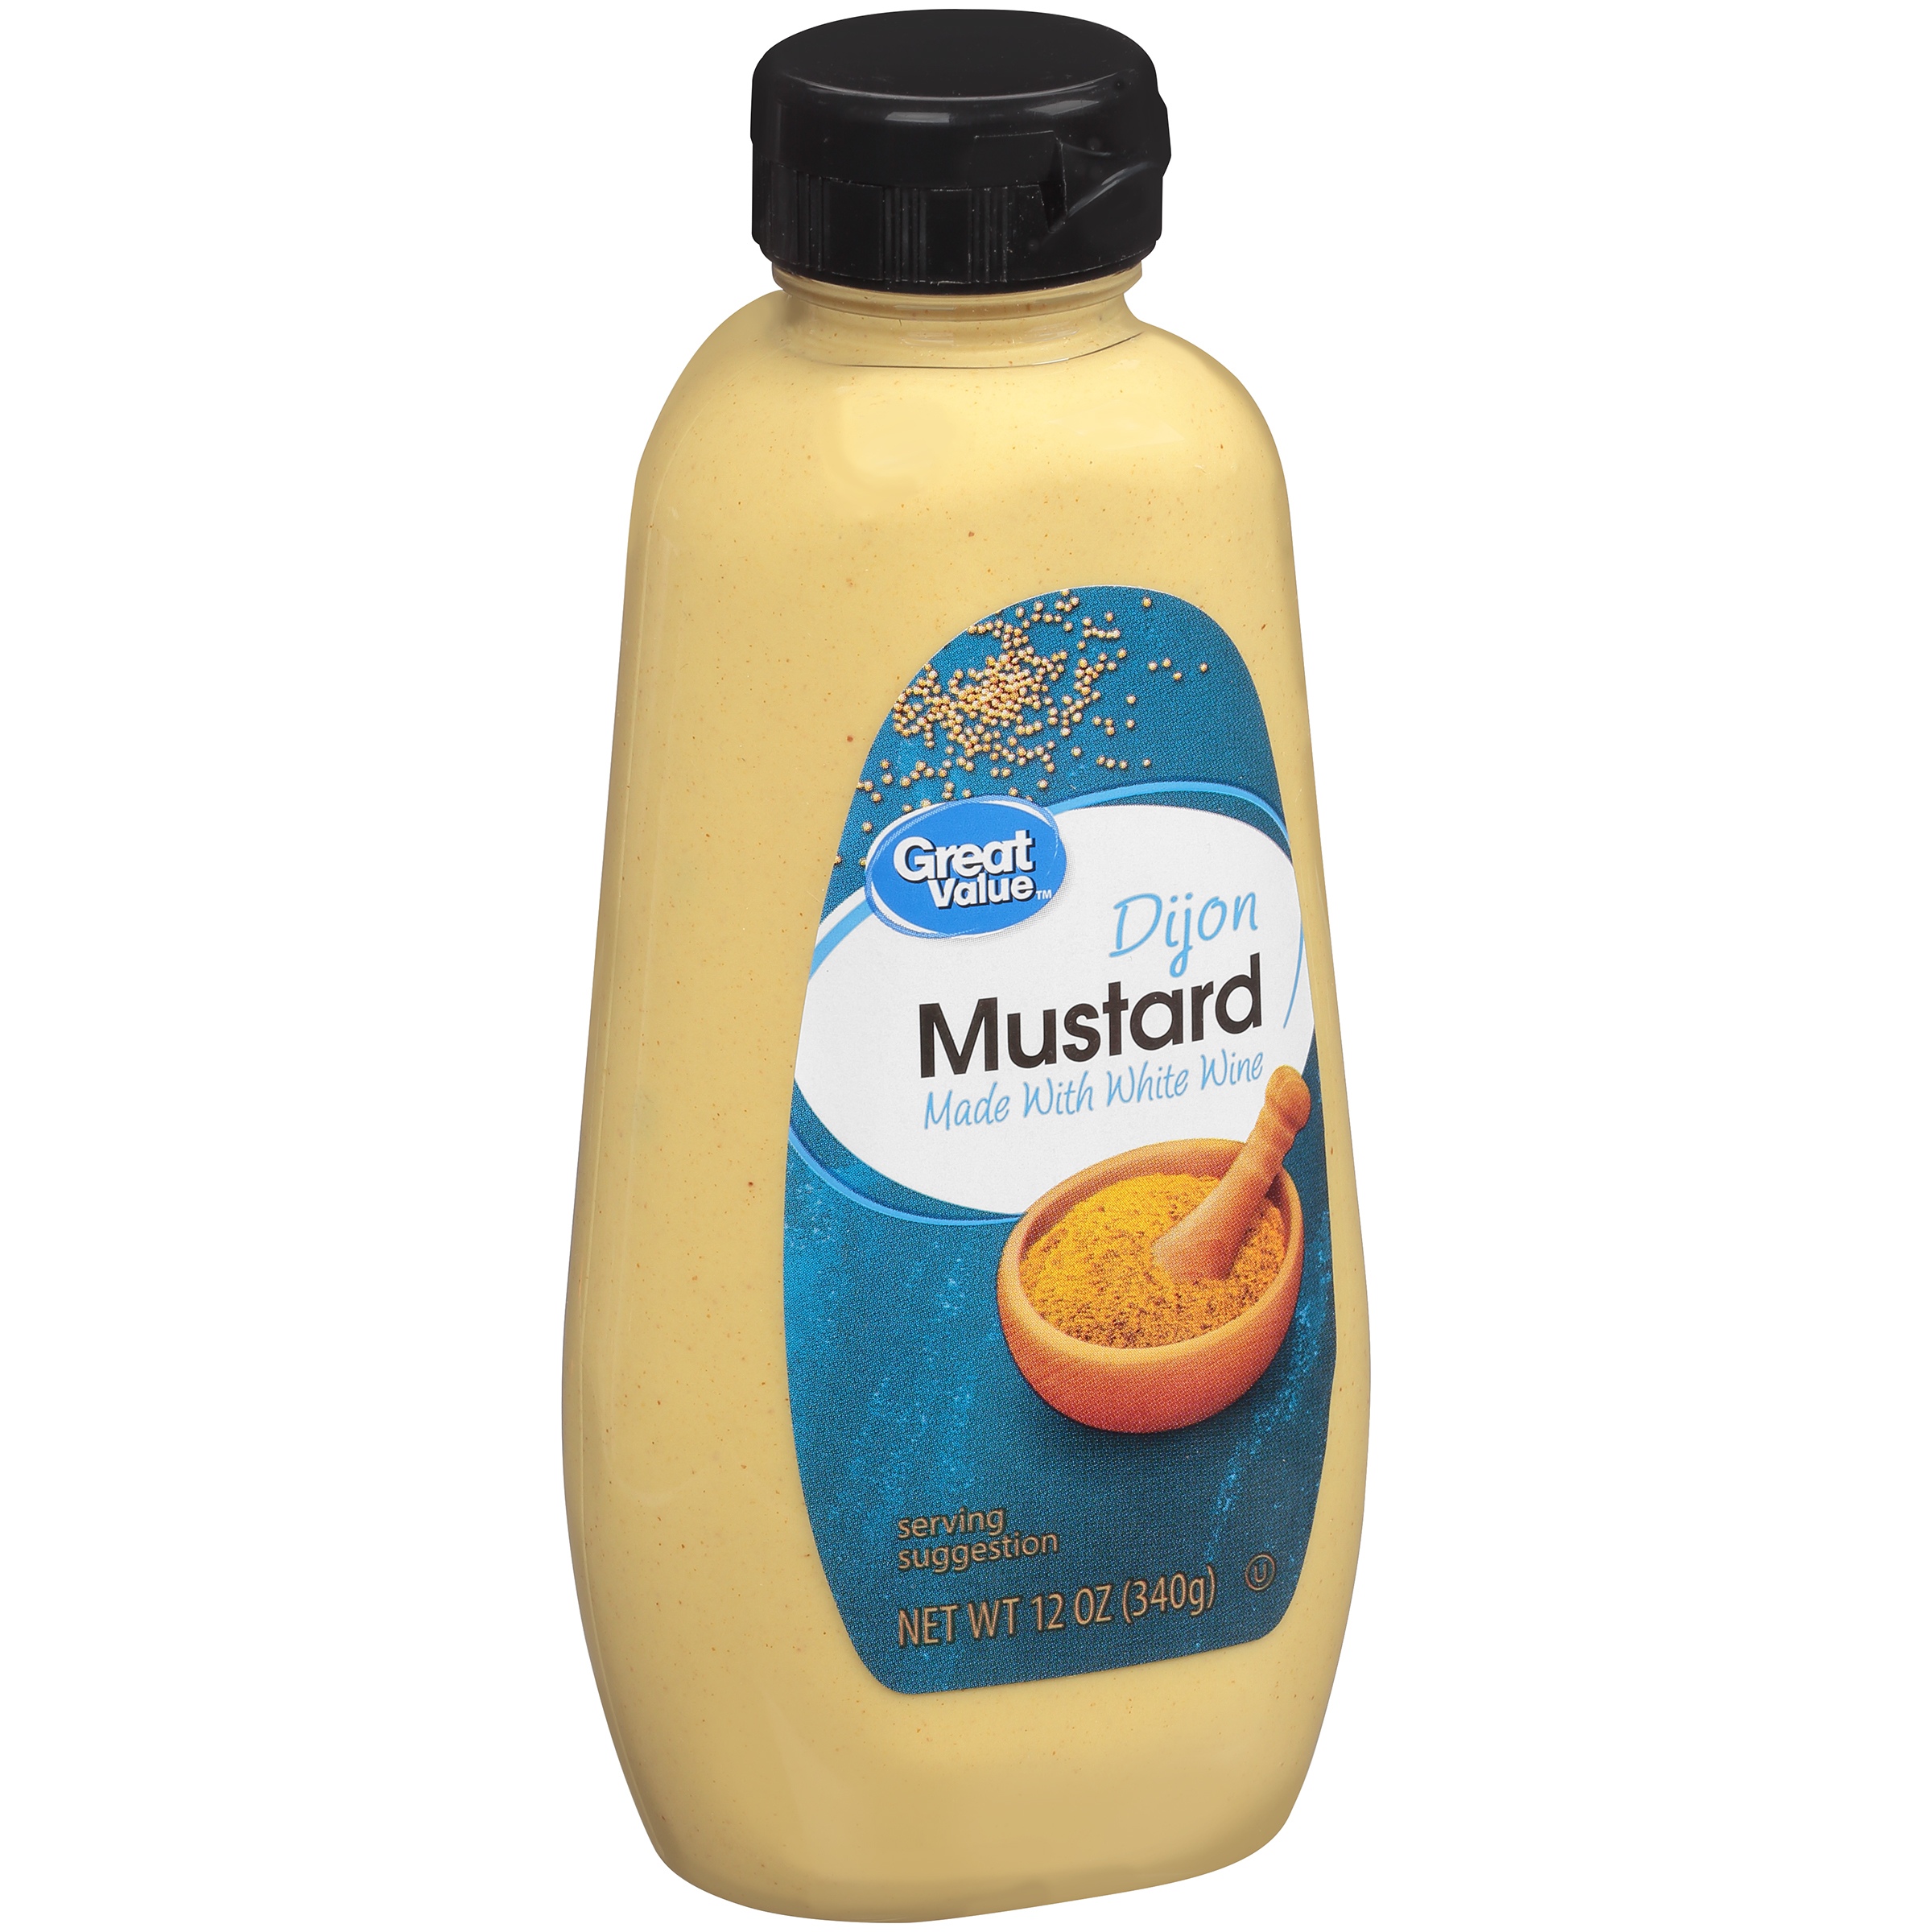 Great Value Dijon Mustard, 12 Oz